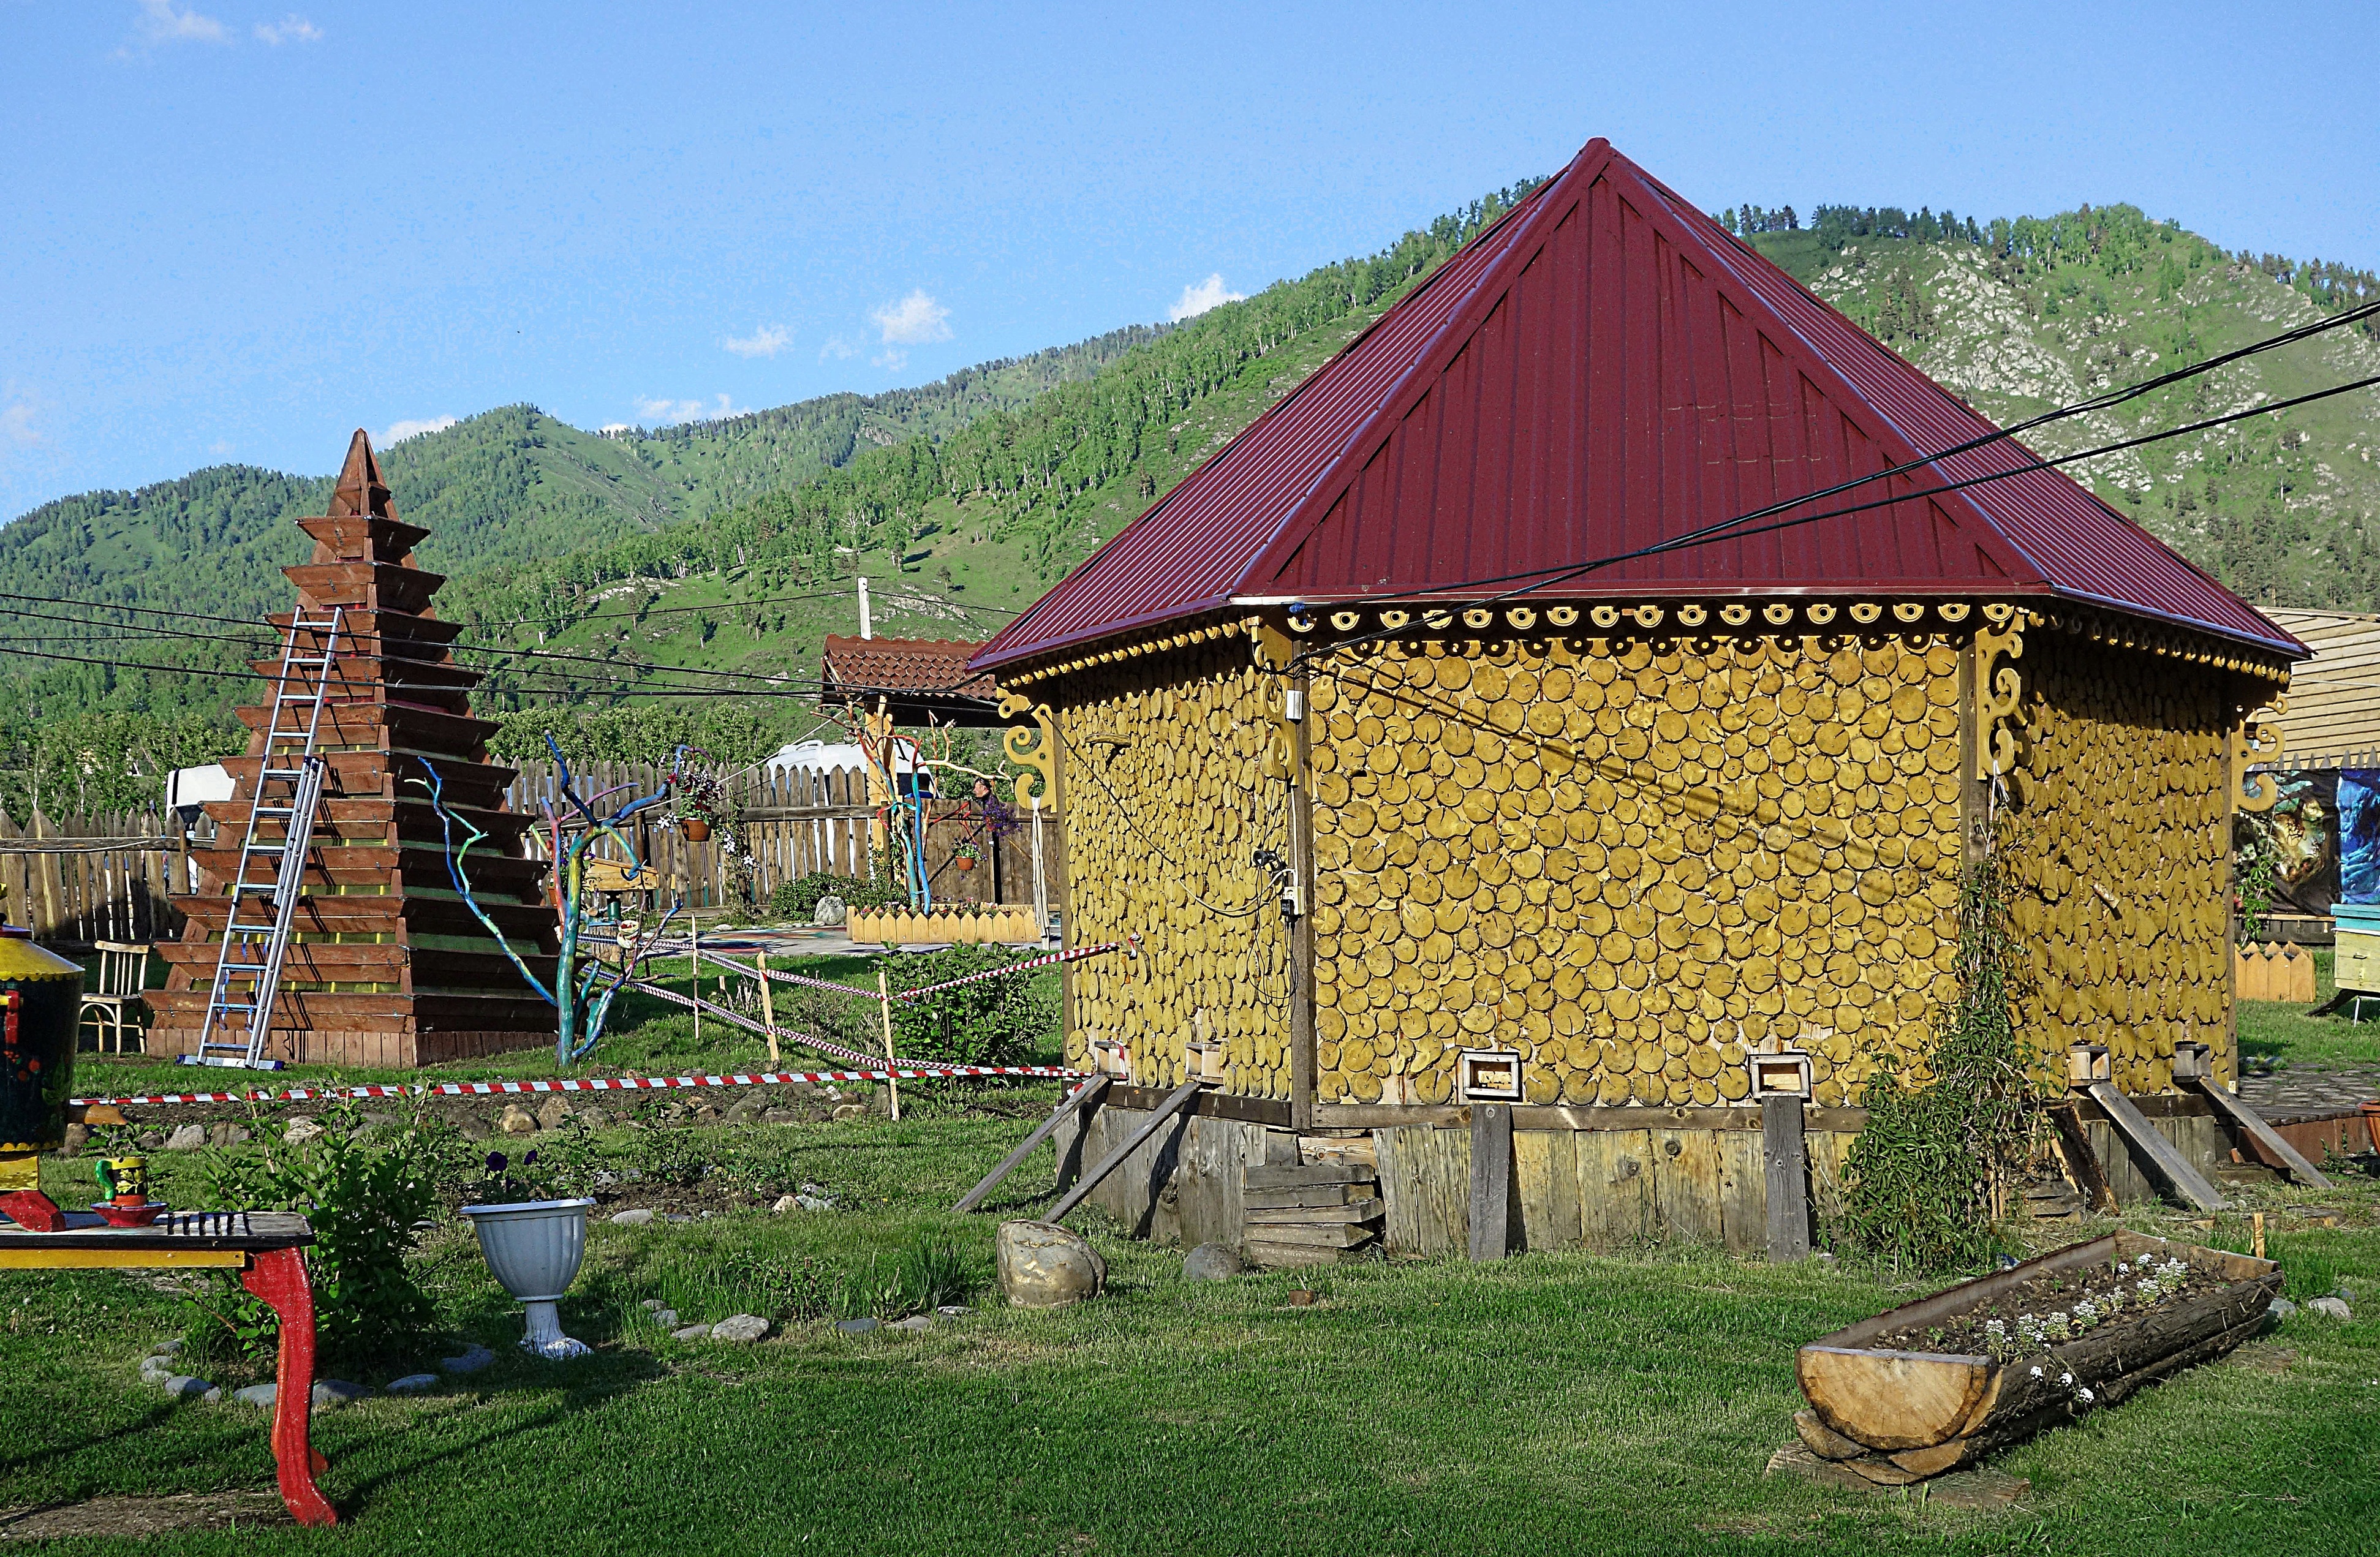 Турбаза с домиками, стилизованными под алтайские юрты. Фото Морошкина В.В.